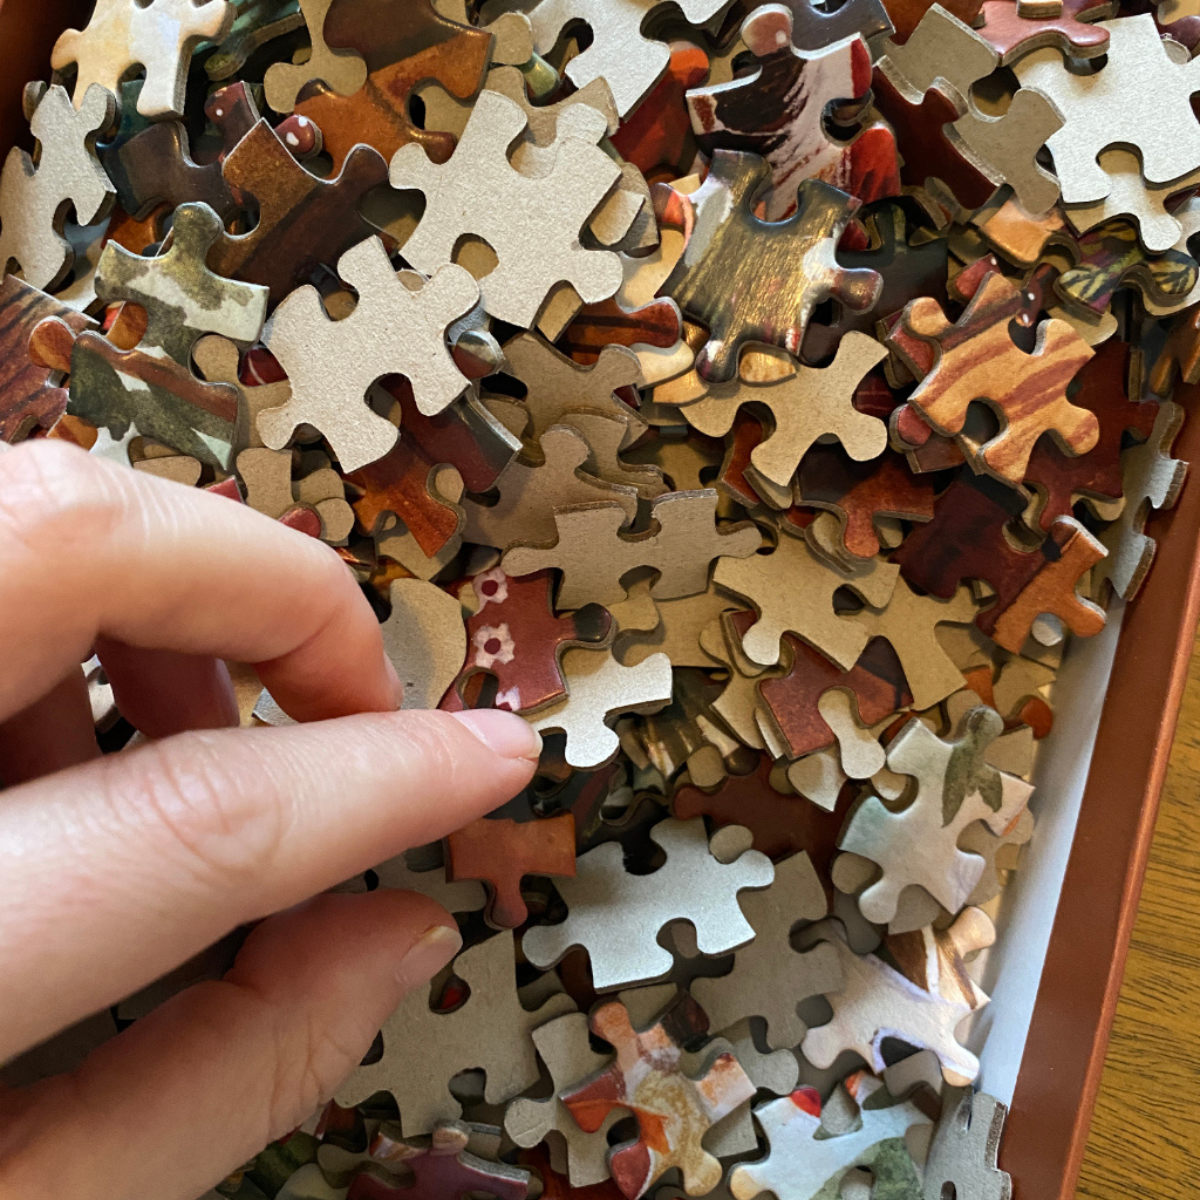 Avec 1000 pièces, ce puzzle offre un défi stimulant qui captivera les amateurs de puzzle de tous niveaux. C'est l'occasion parfaite de passer des heures de détente à assembler un magnifique tableau.